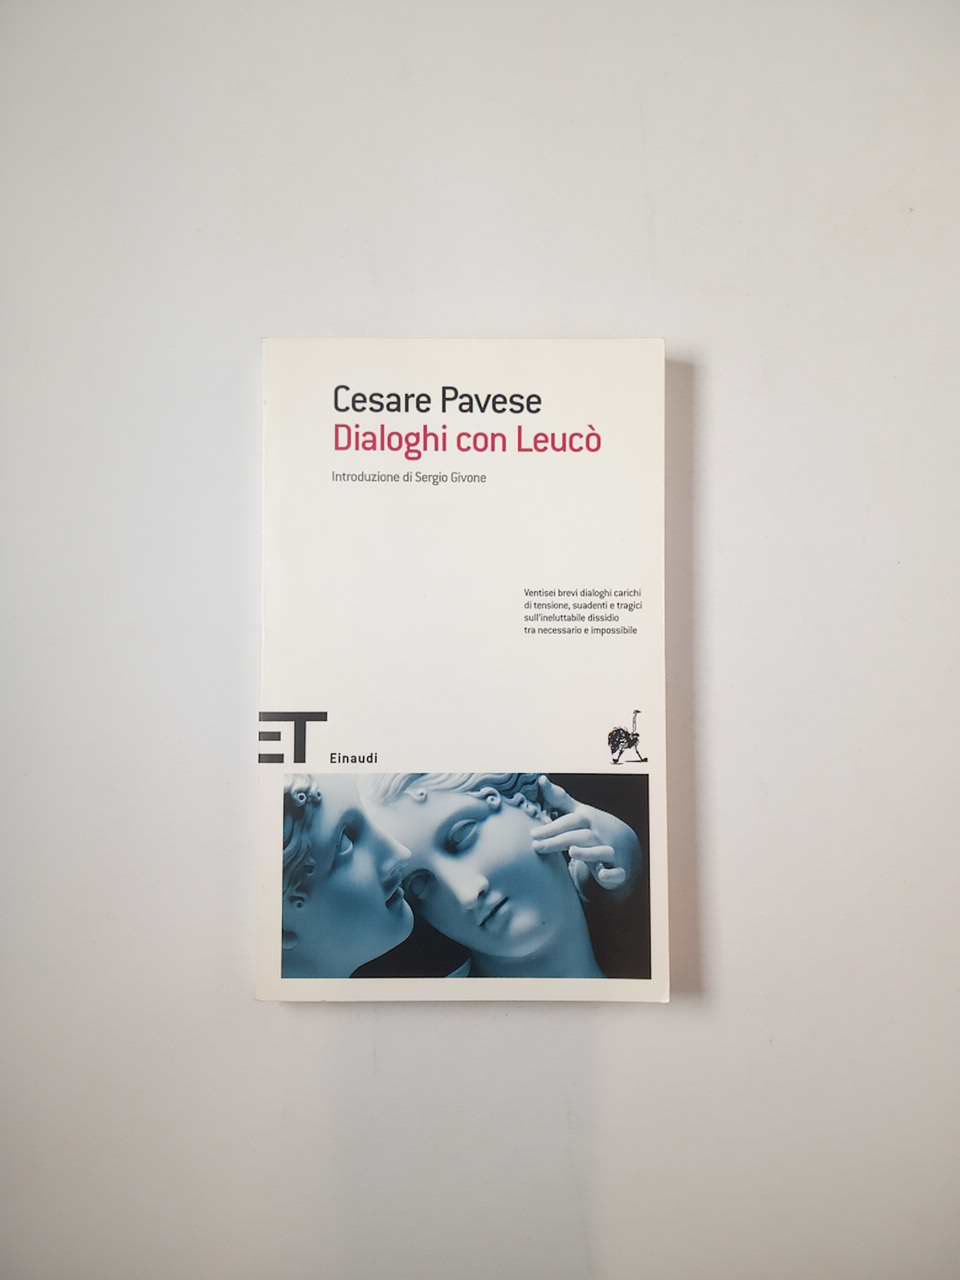 Cesare Pavese - Dialoghi con Leucò - Einaudi 2010 - Semi d'inchiostro